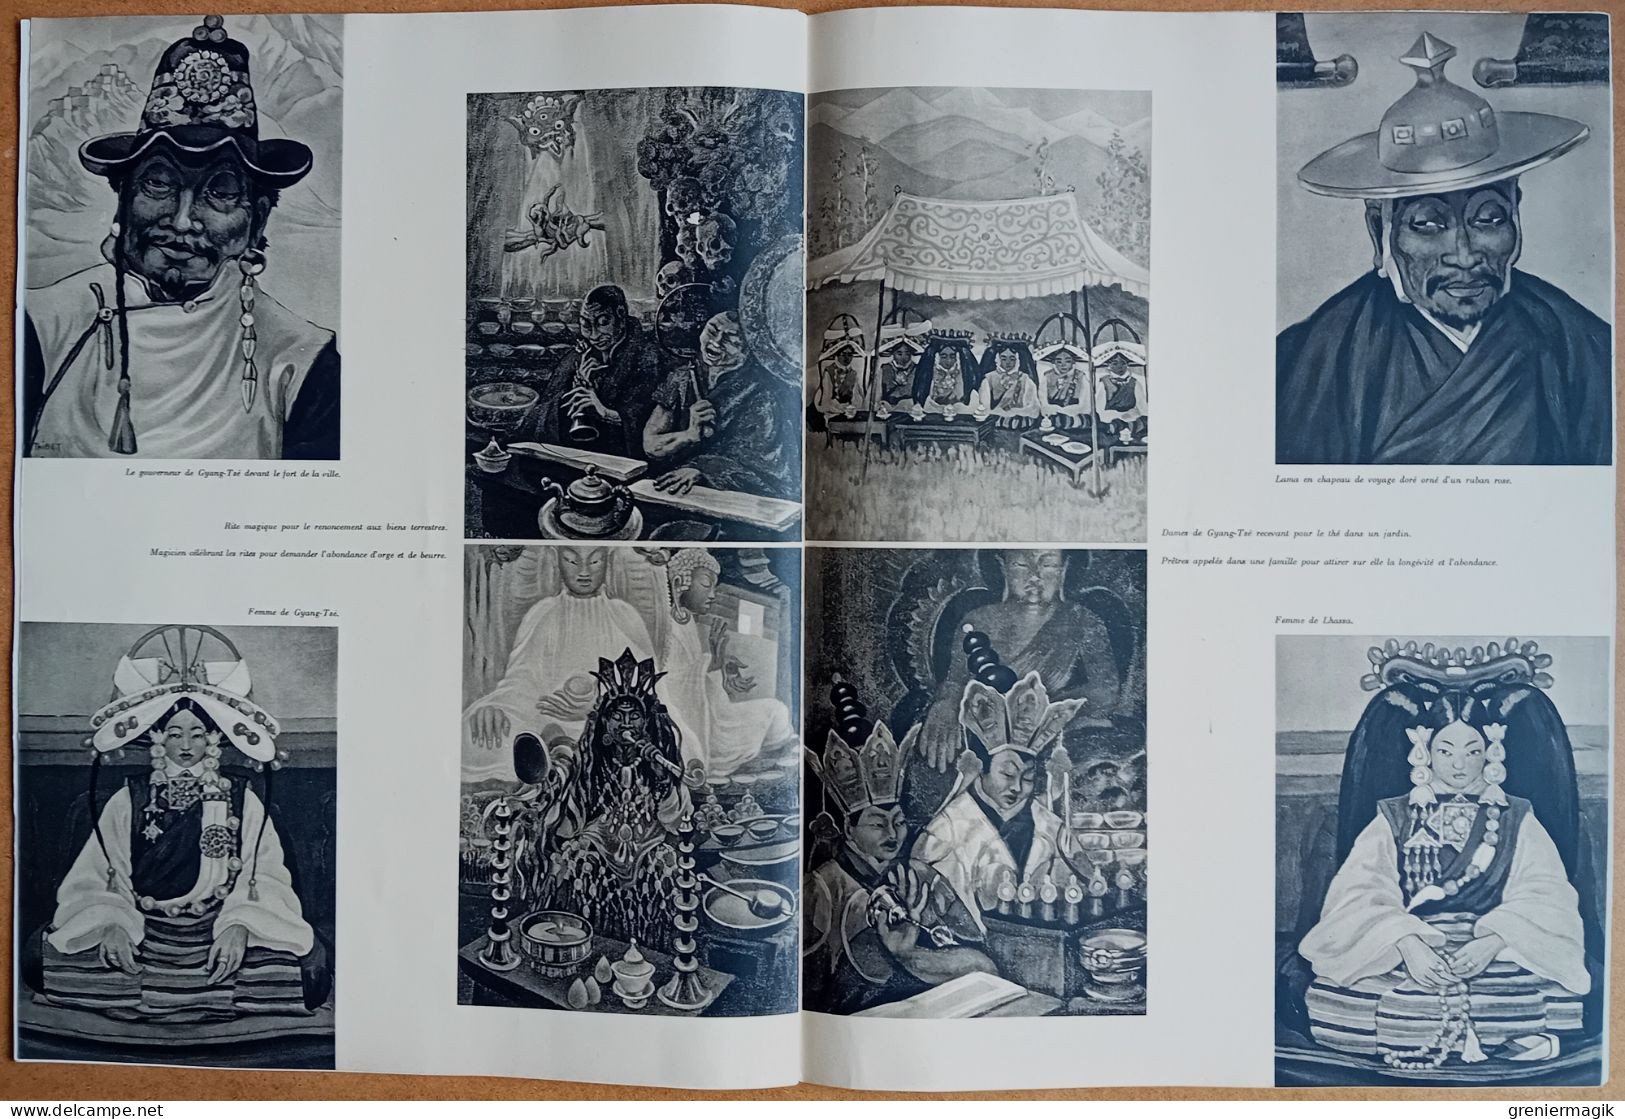 France Illustration N°84 10/05/1947 Musée de la Synagogue/Pont de Bullay Allemagne/Tibet/Tunisie/1er mai de crise